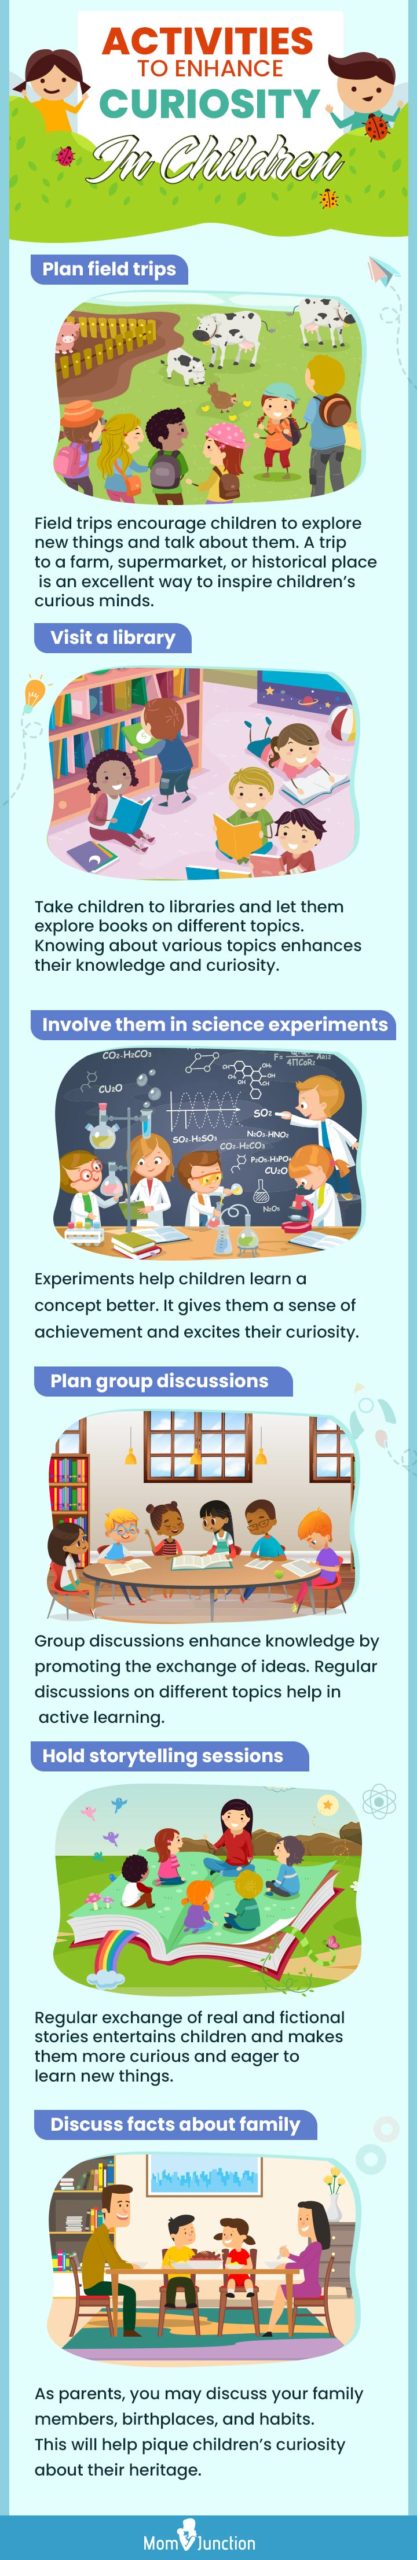 activities to enhance curiosity in children (infographic)